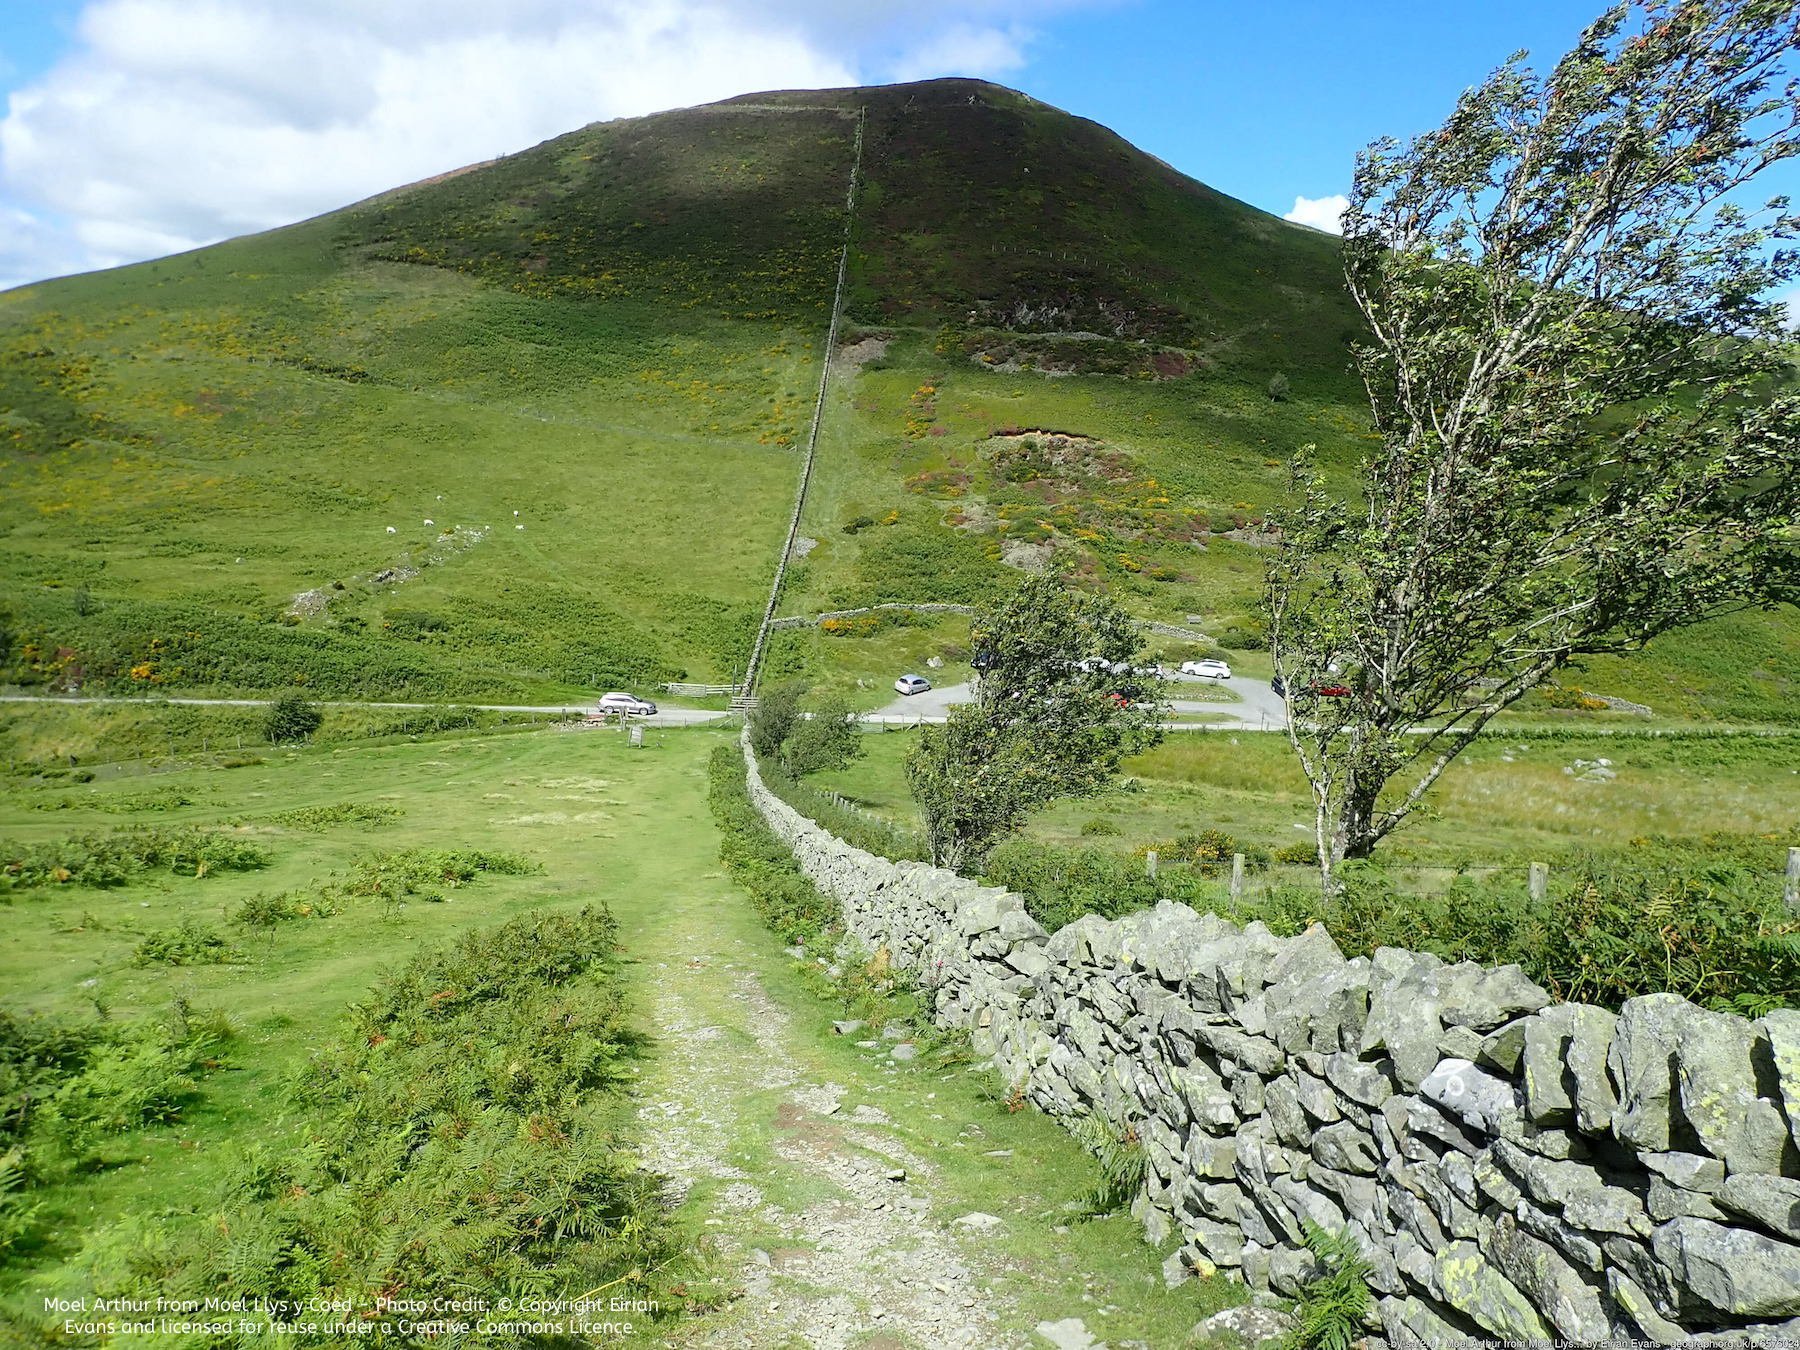 Moel Arthur - Flintshire (Sir Fflint) 3 Peaks Hiking Challenge